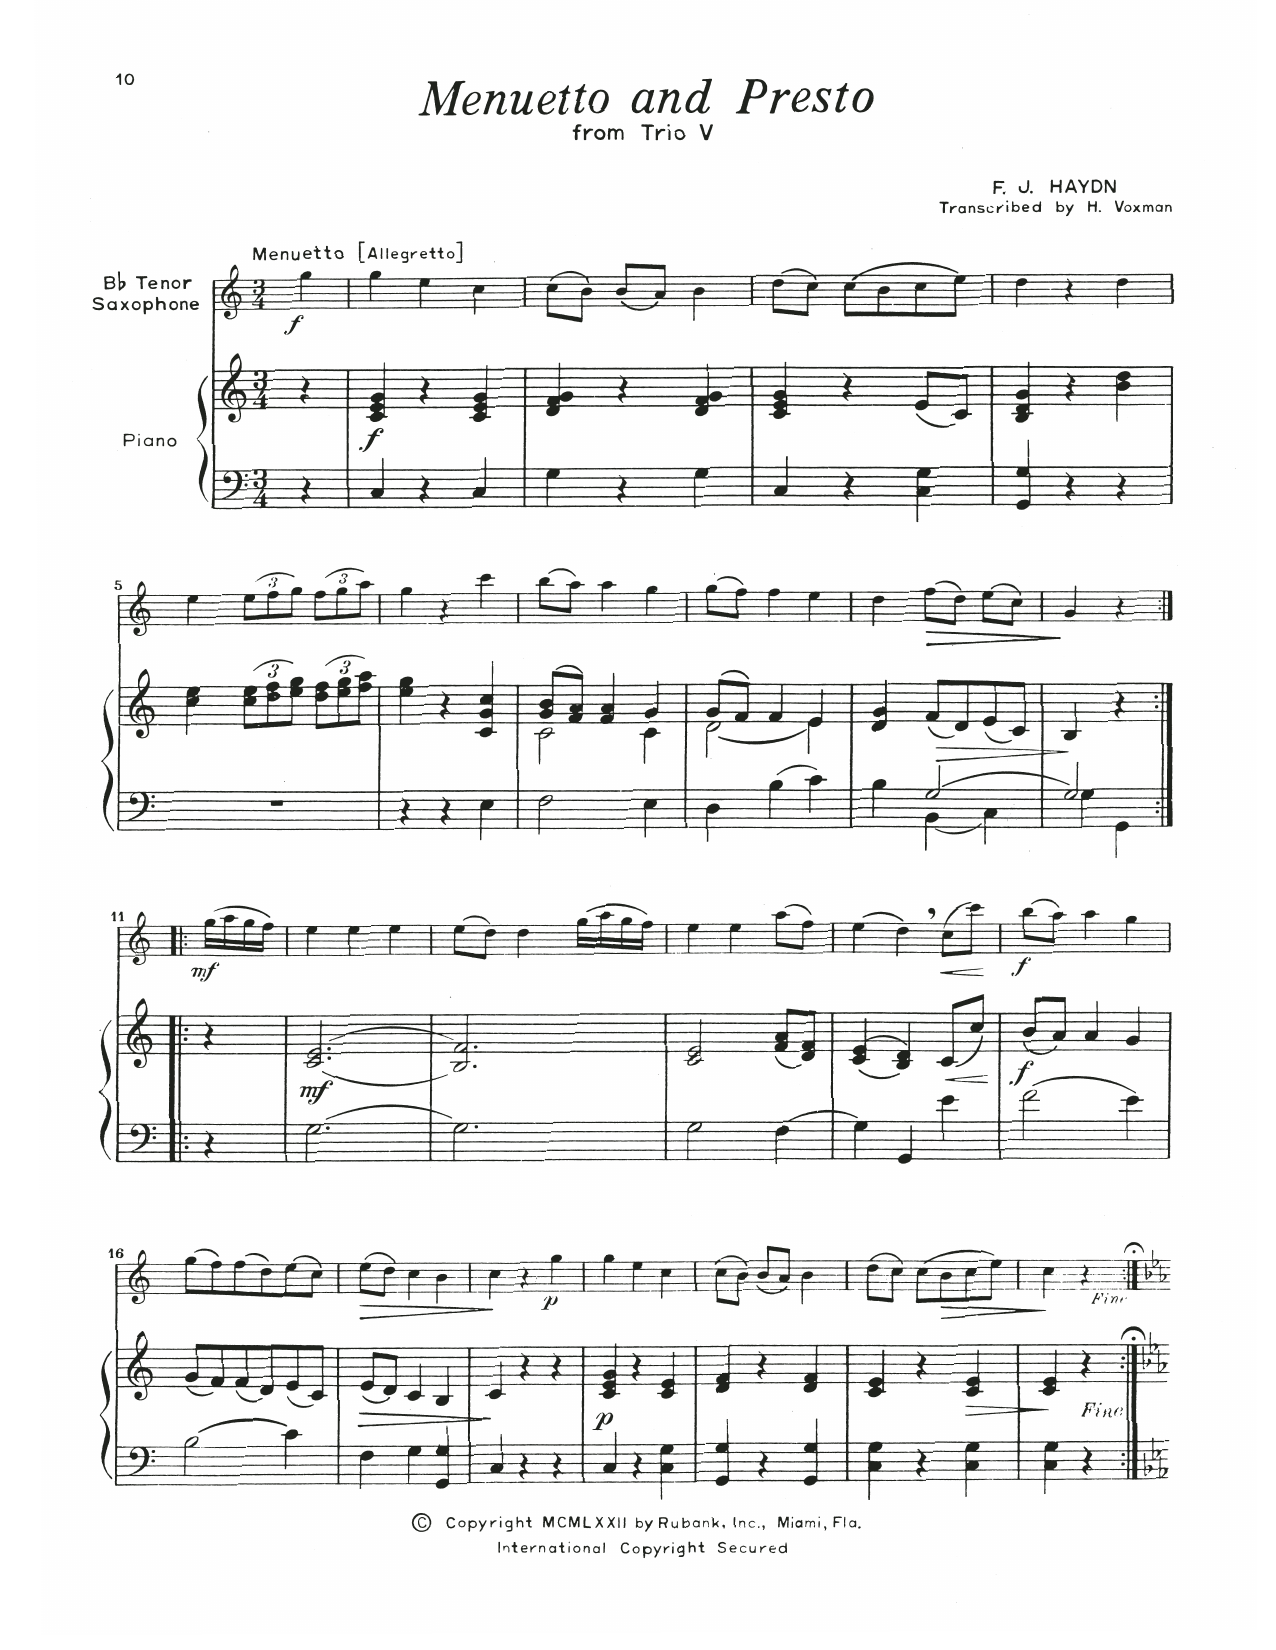 Franz Joseph Haydn Menuetto & Presto (Trio V) Sheet Music Notes & Chords for Tenor Sax and Piano - Download or Print PDF